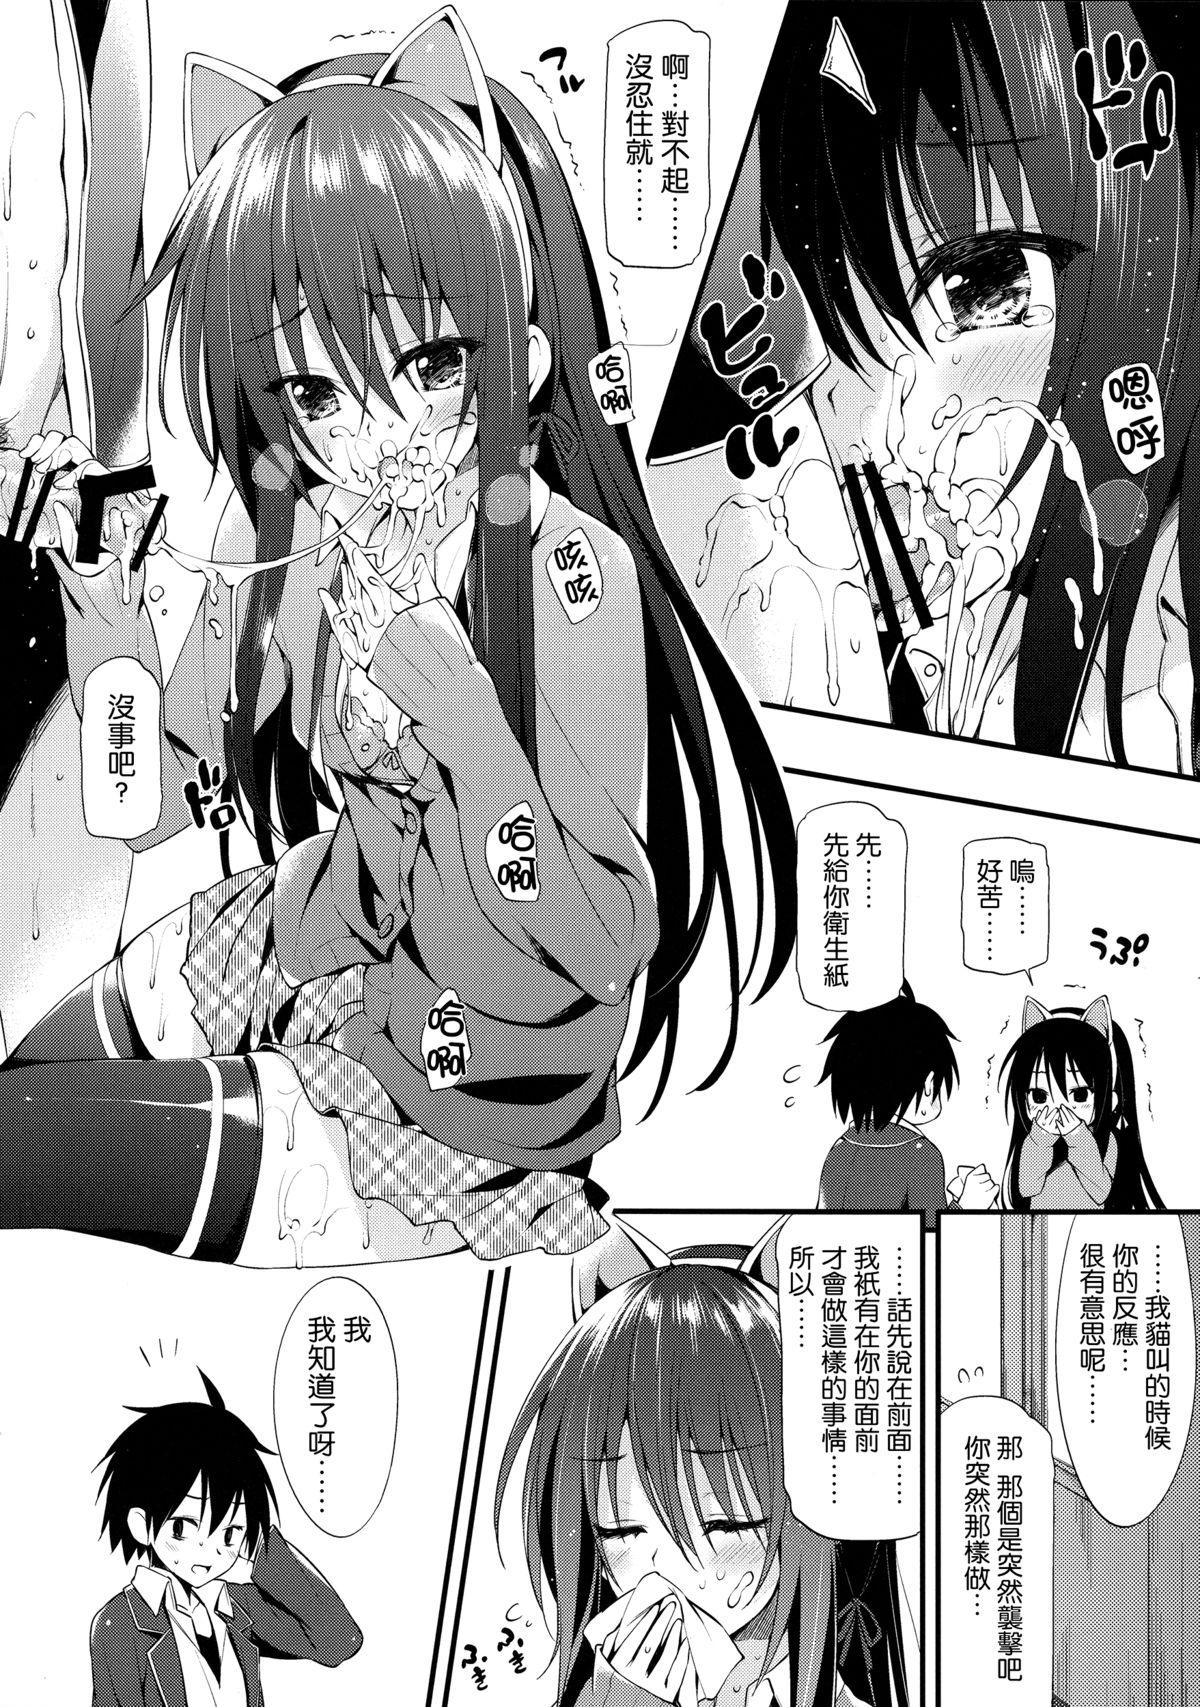 Amateur Yukinon Gentei - Yahari ore no seishun love come wa machigatteiru Milf Sex - Page 7